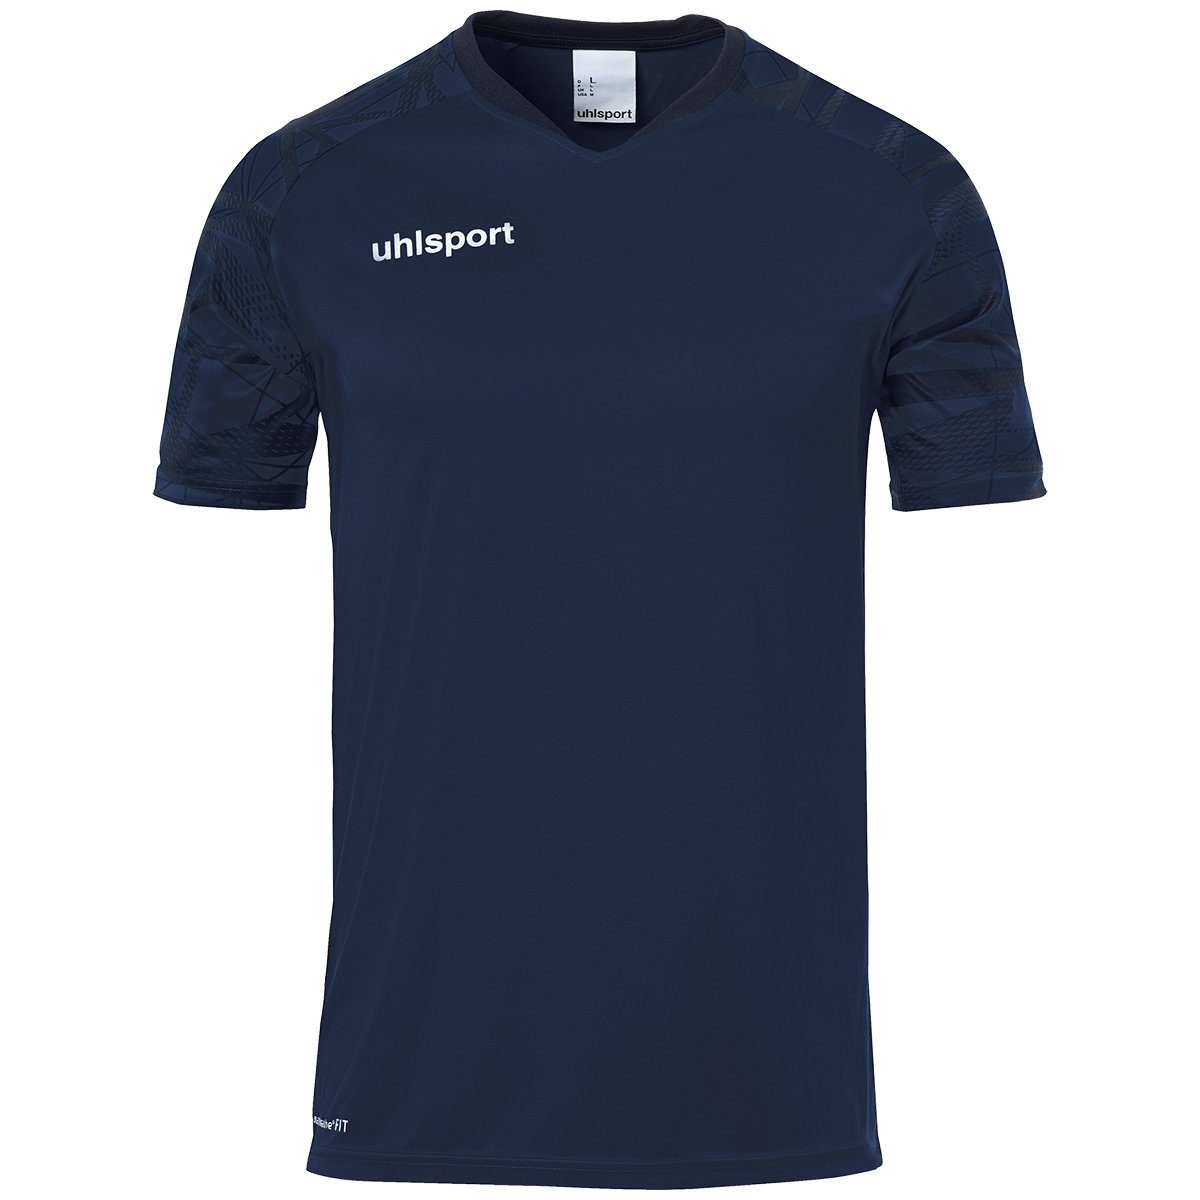 uhlsport uhlsport TRIKOT GOAL 25 Trainings-T-Shirt atmungsaktiv marine/marine KURZARM Trainingsshirt